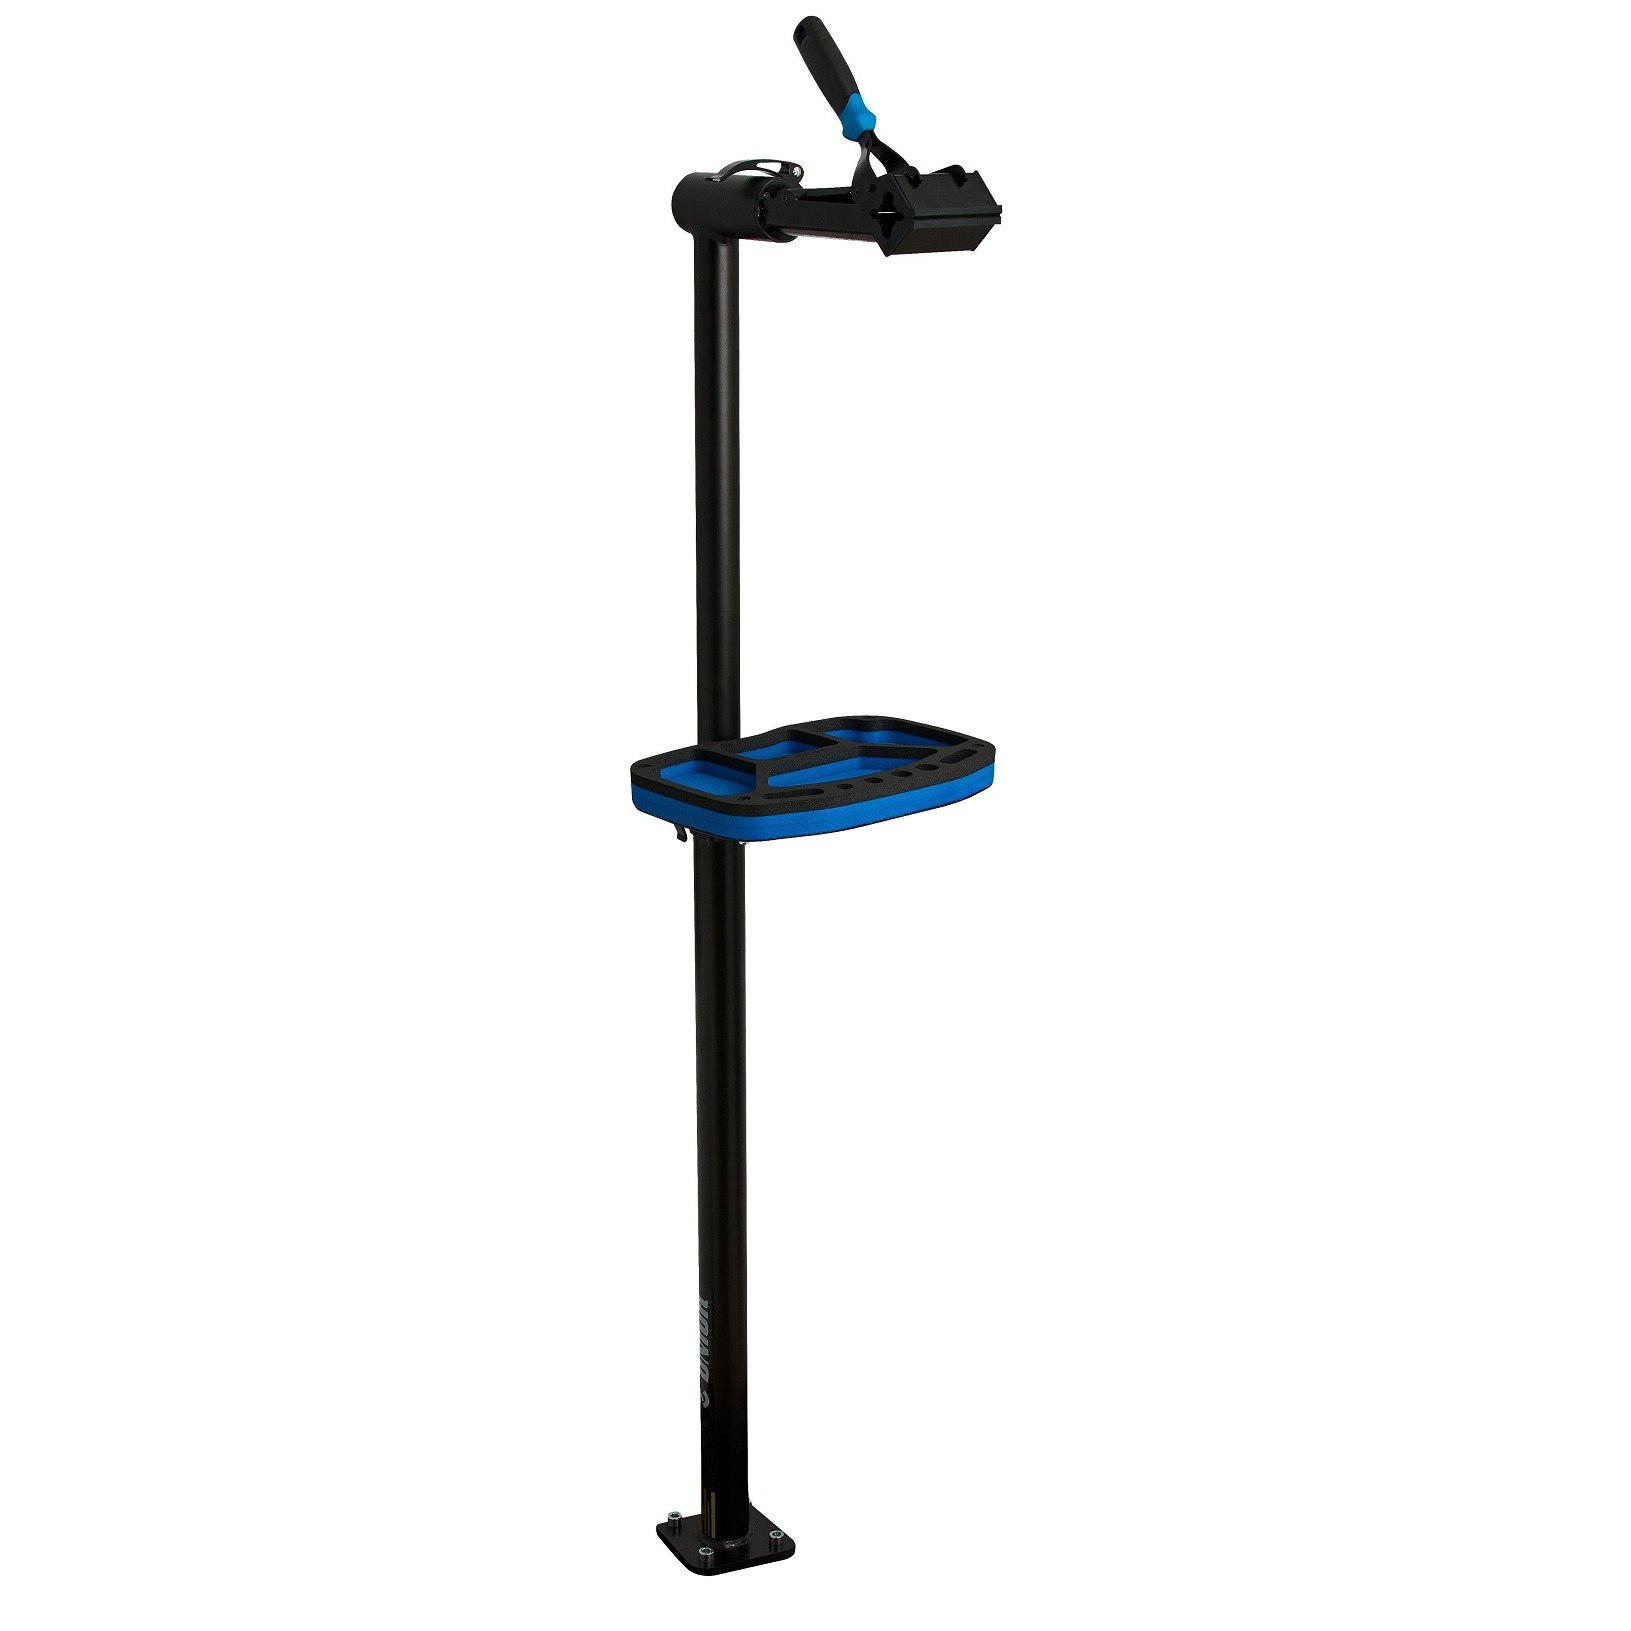 Produktbild von Unior Bike Tools Montageständer, Spannfutter mit Feder - 1693B1 - schwarz/blau